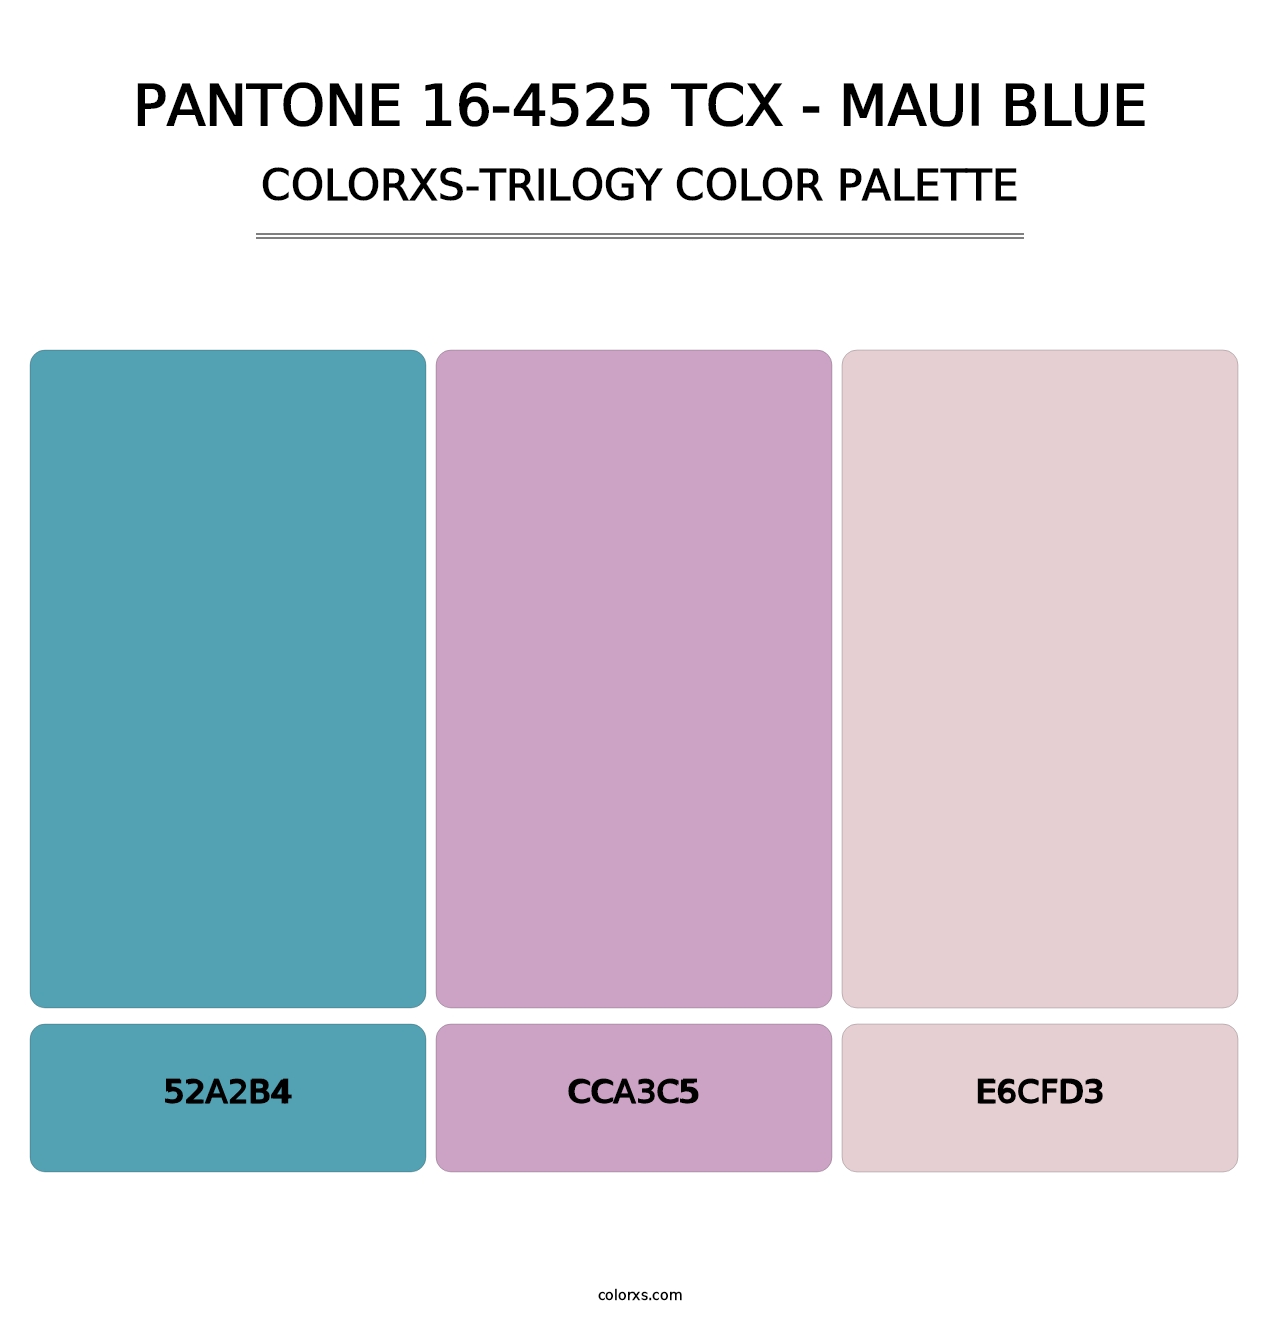 PANTONE 16-4525 TCX - Maui Blue - Colorxs Trilogy Palette